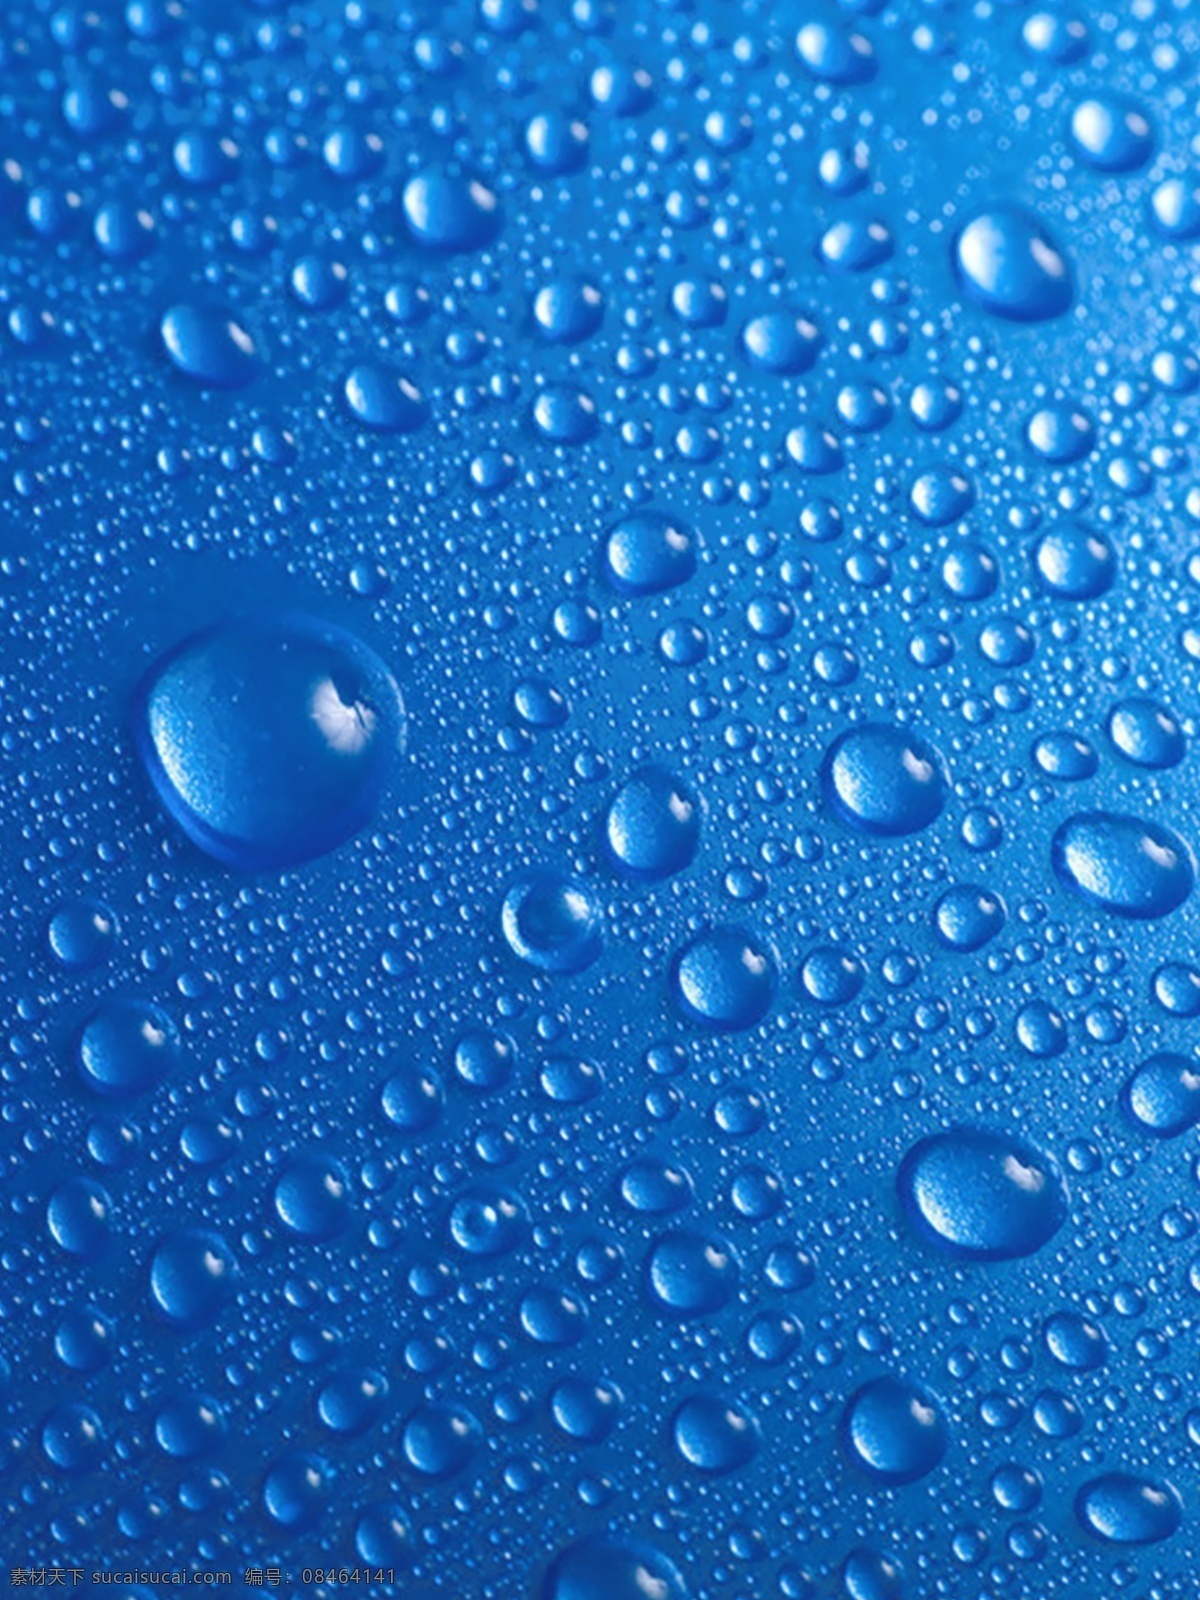 水珠背景 飞溅 背景 凝露 微距 雨滴 水滴 图案 天气 水珠 倒影 环境 清洁 表面 液体